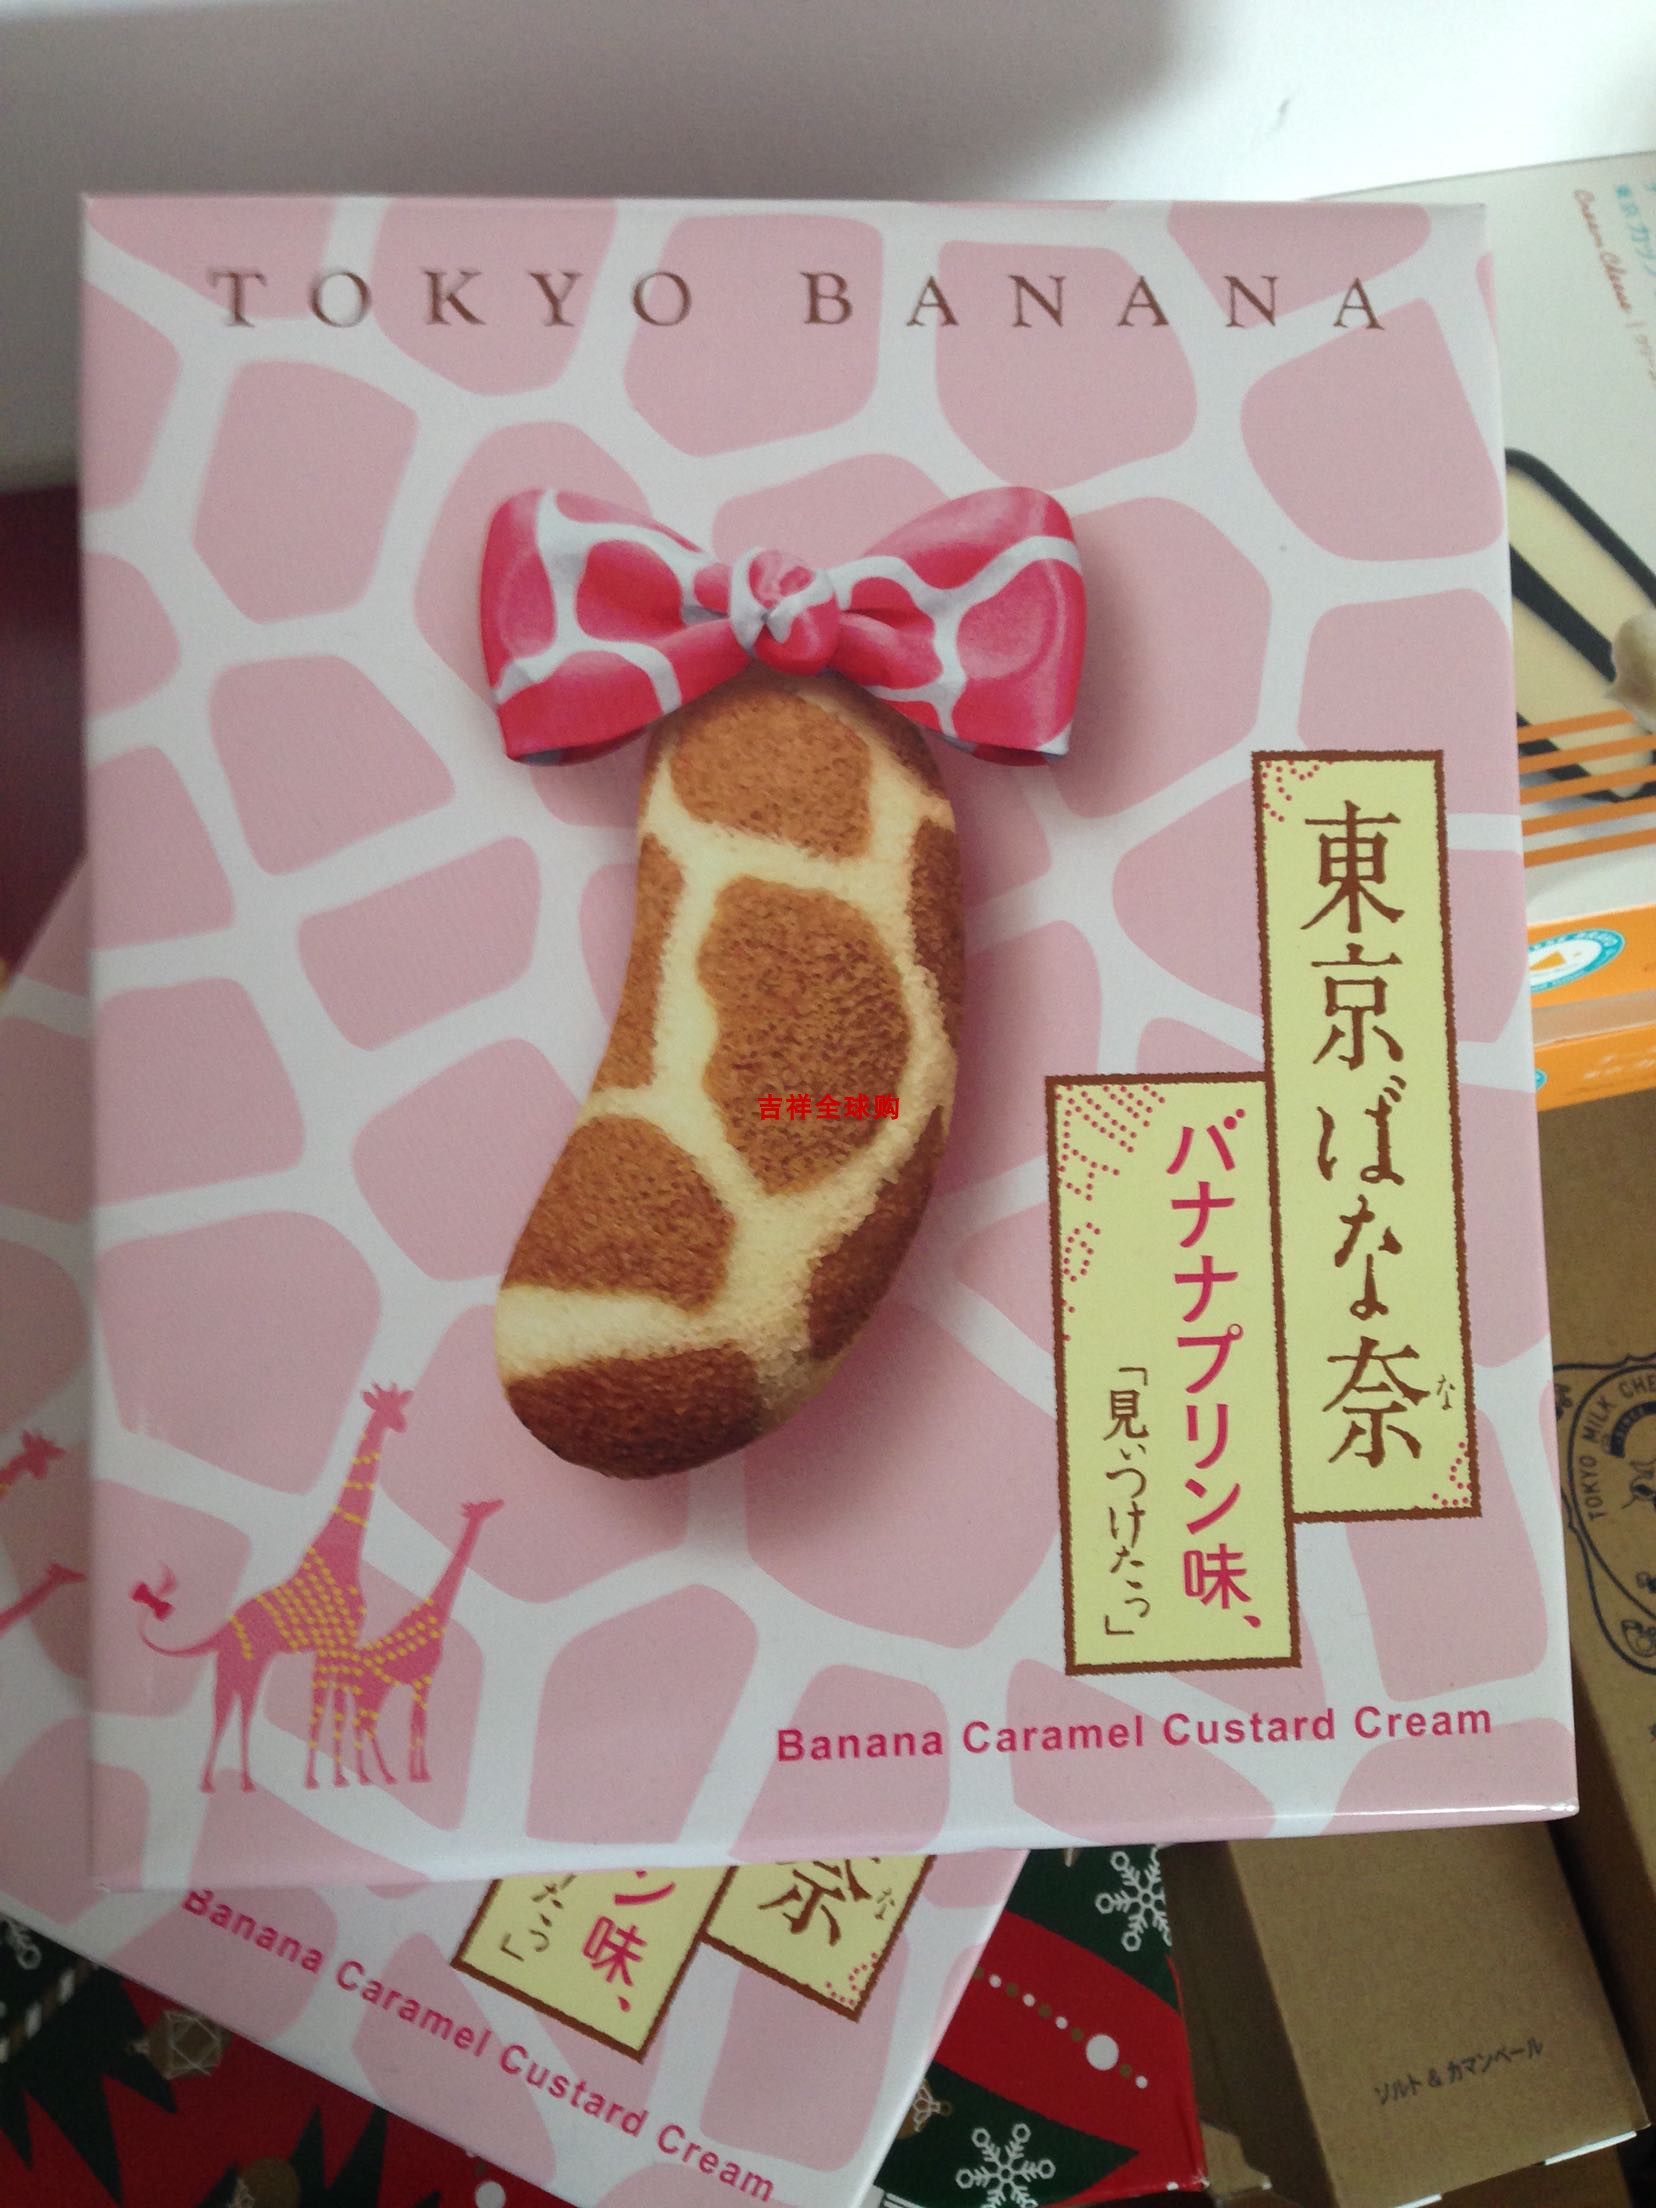 tokyo banana 东京香蕉蛋糕 长颈鹿麒麟纹豹纹香蕉蛋糕8枚